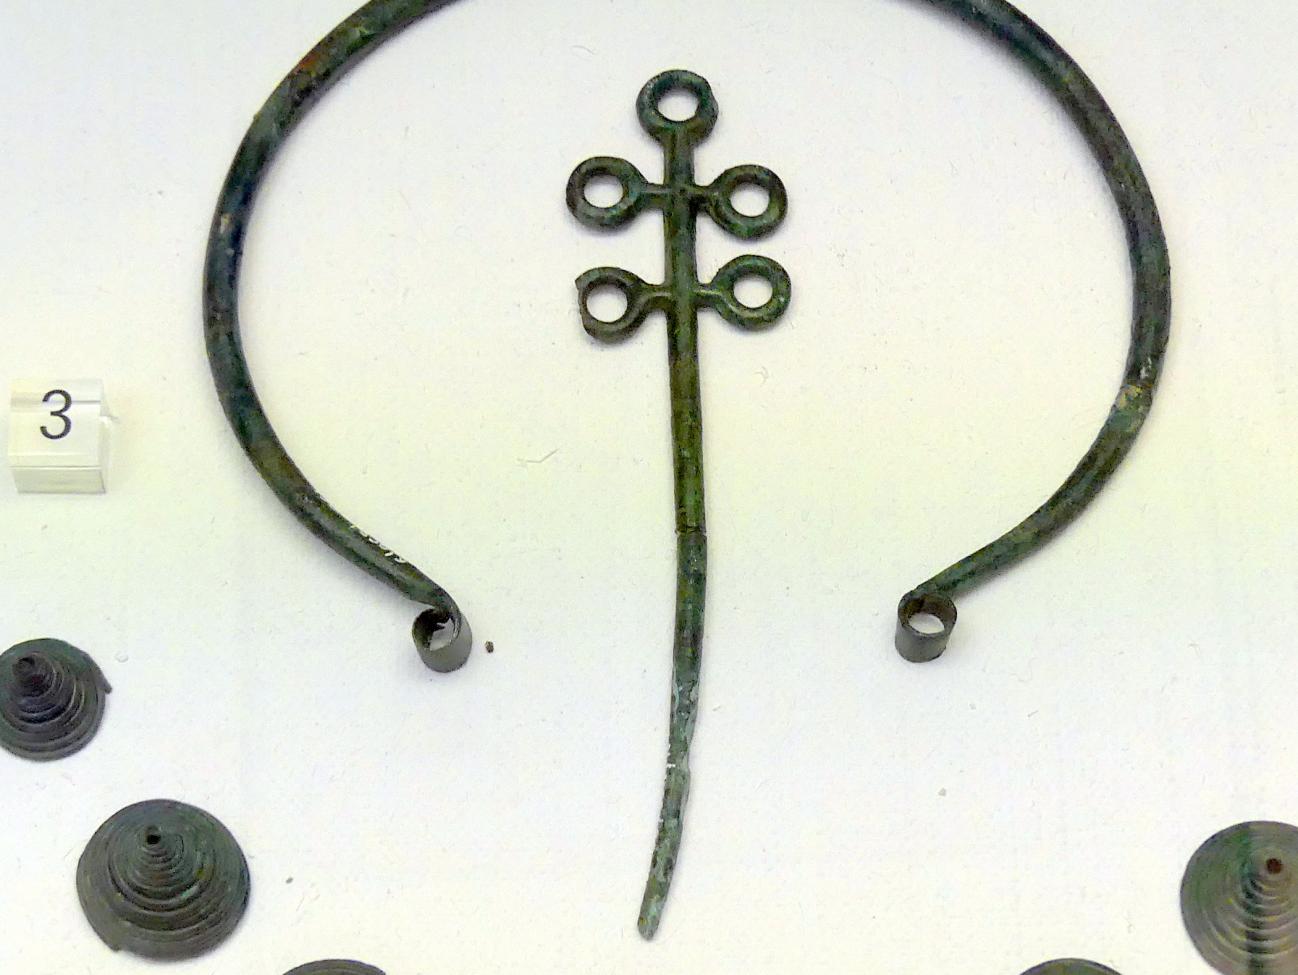 Nadel mit fünffachem Ringkopf, Frühe Bronzezeit, 3365 - 1200 v. Chr., Bild 1/2